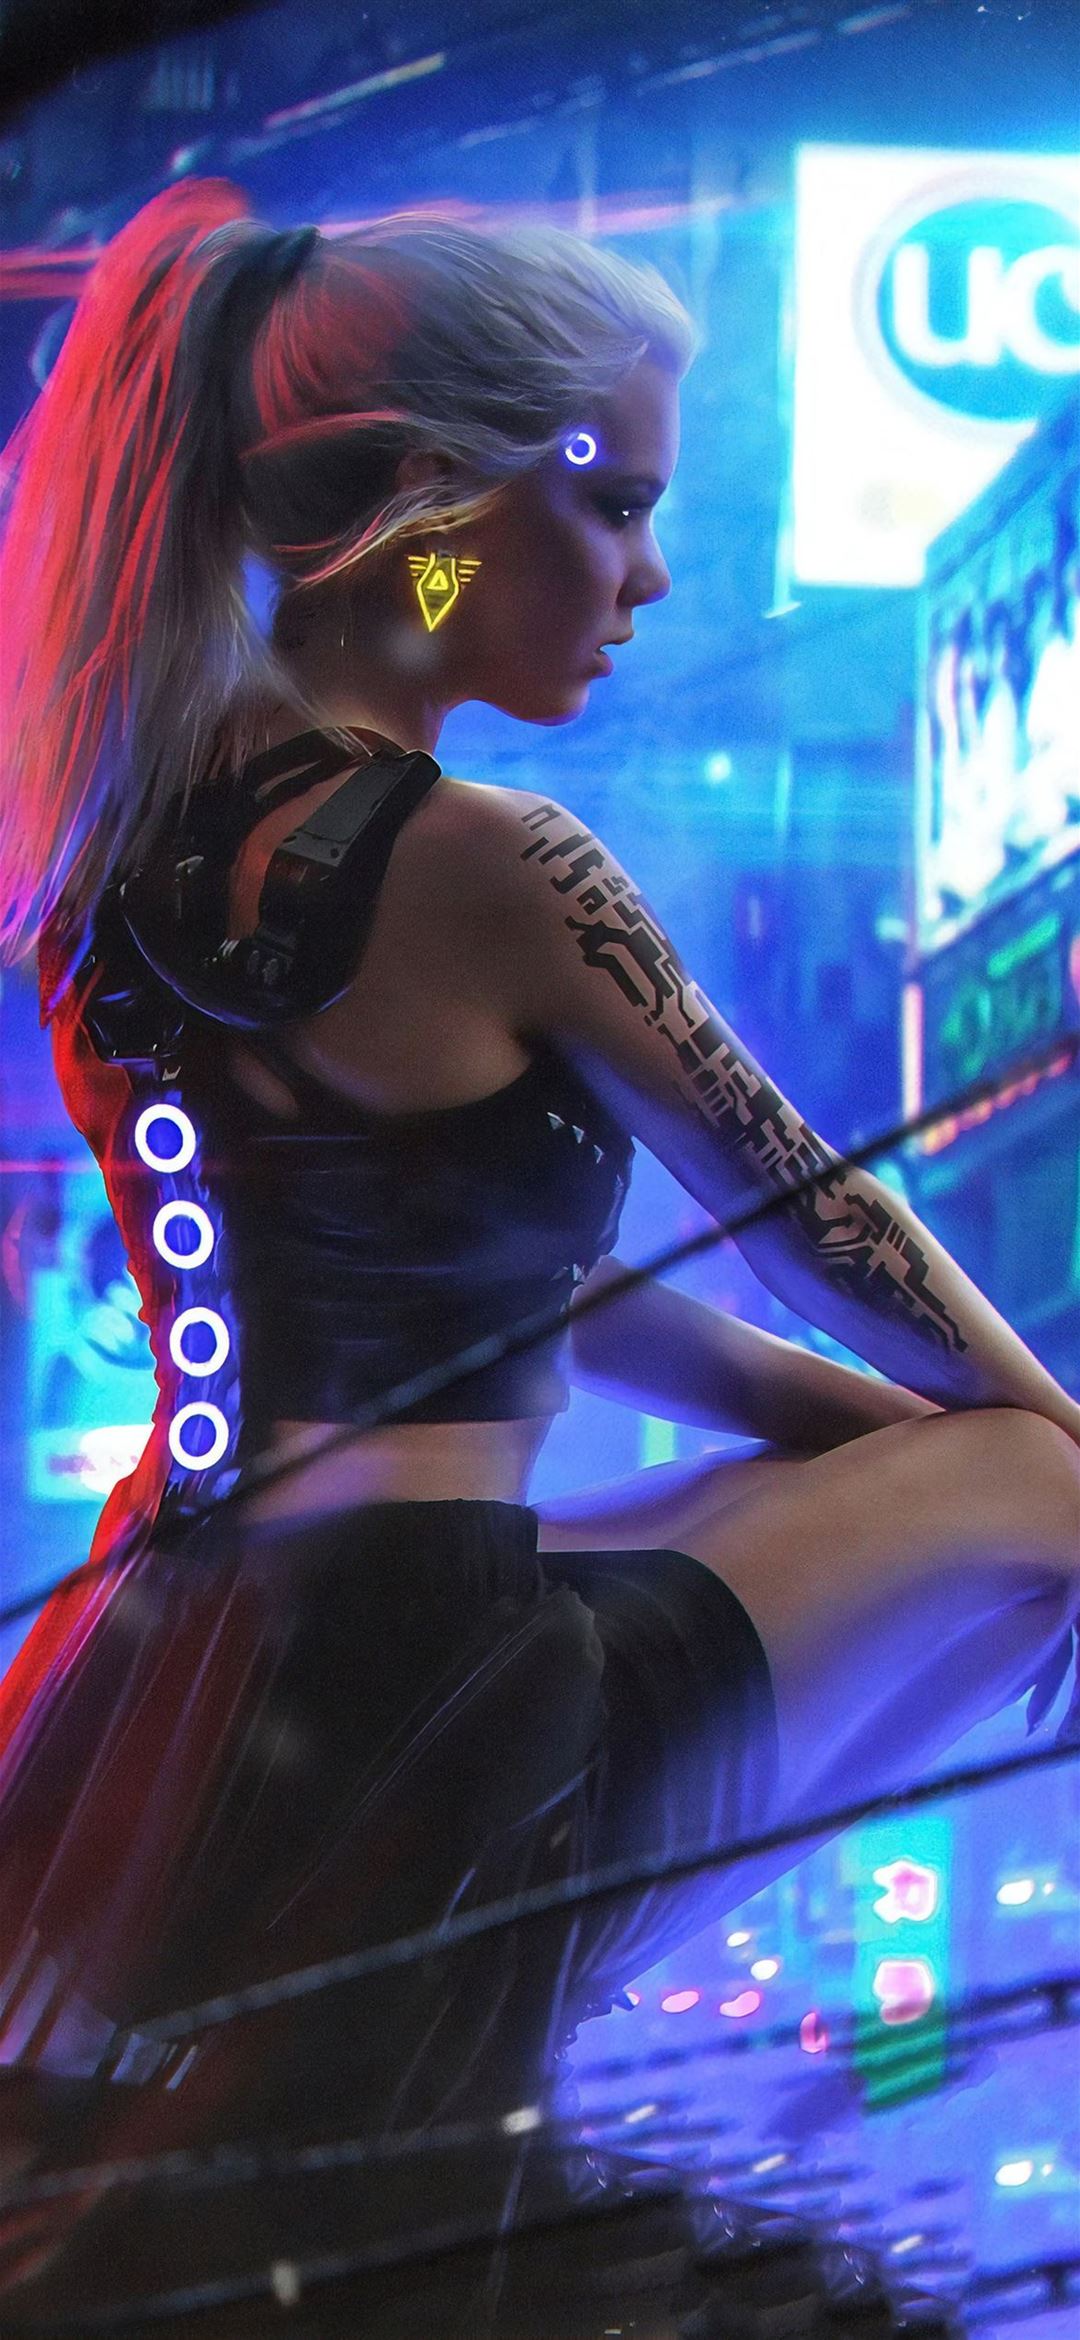 Neon city cyberpunk HD wallpapers  Pxfuel